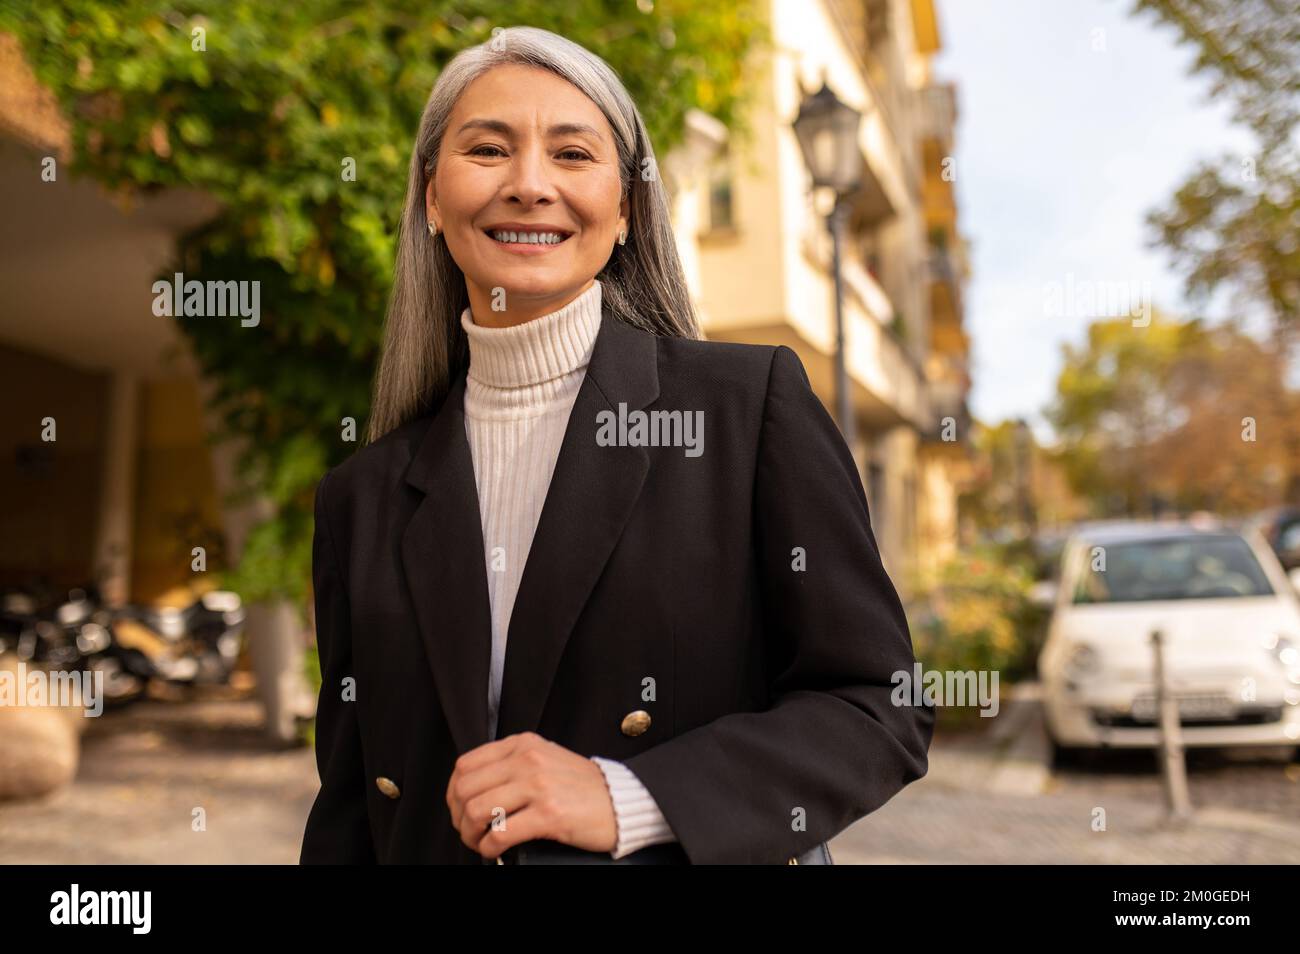 Sonriendo mujer bonita con un abrigo negro en la calle de la ciudad Foto de stock